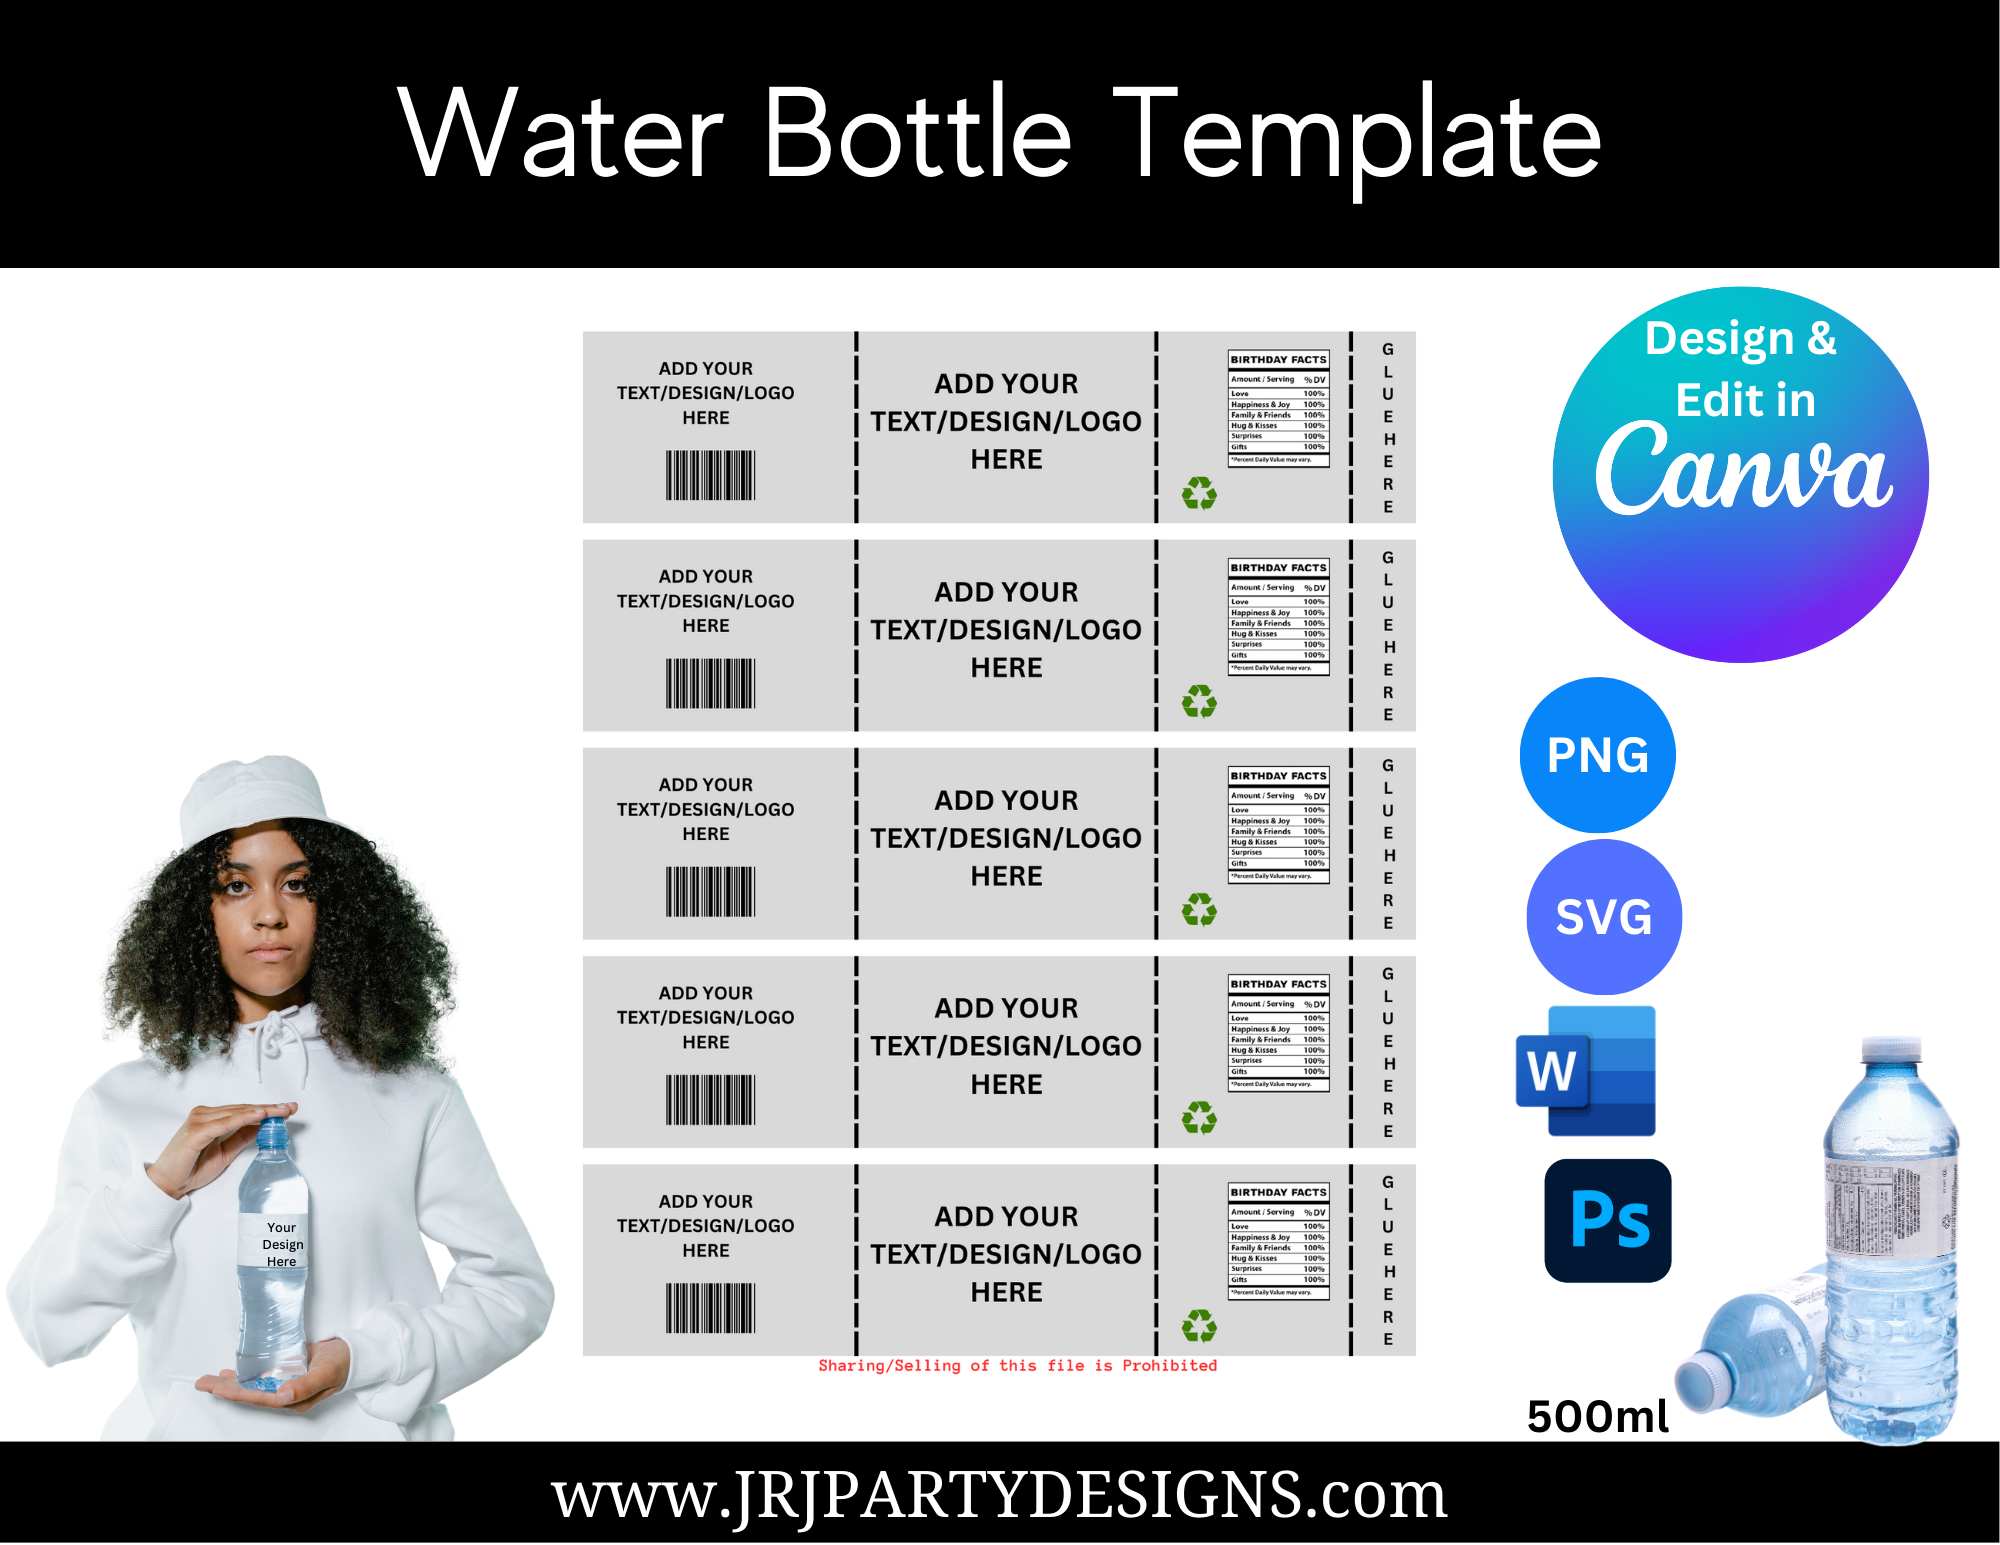 Water Bottle Template